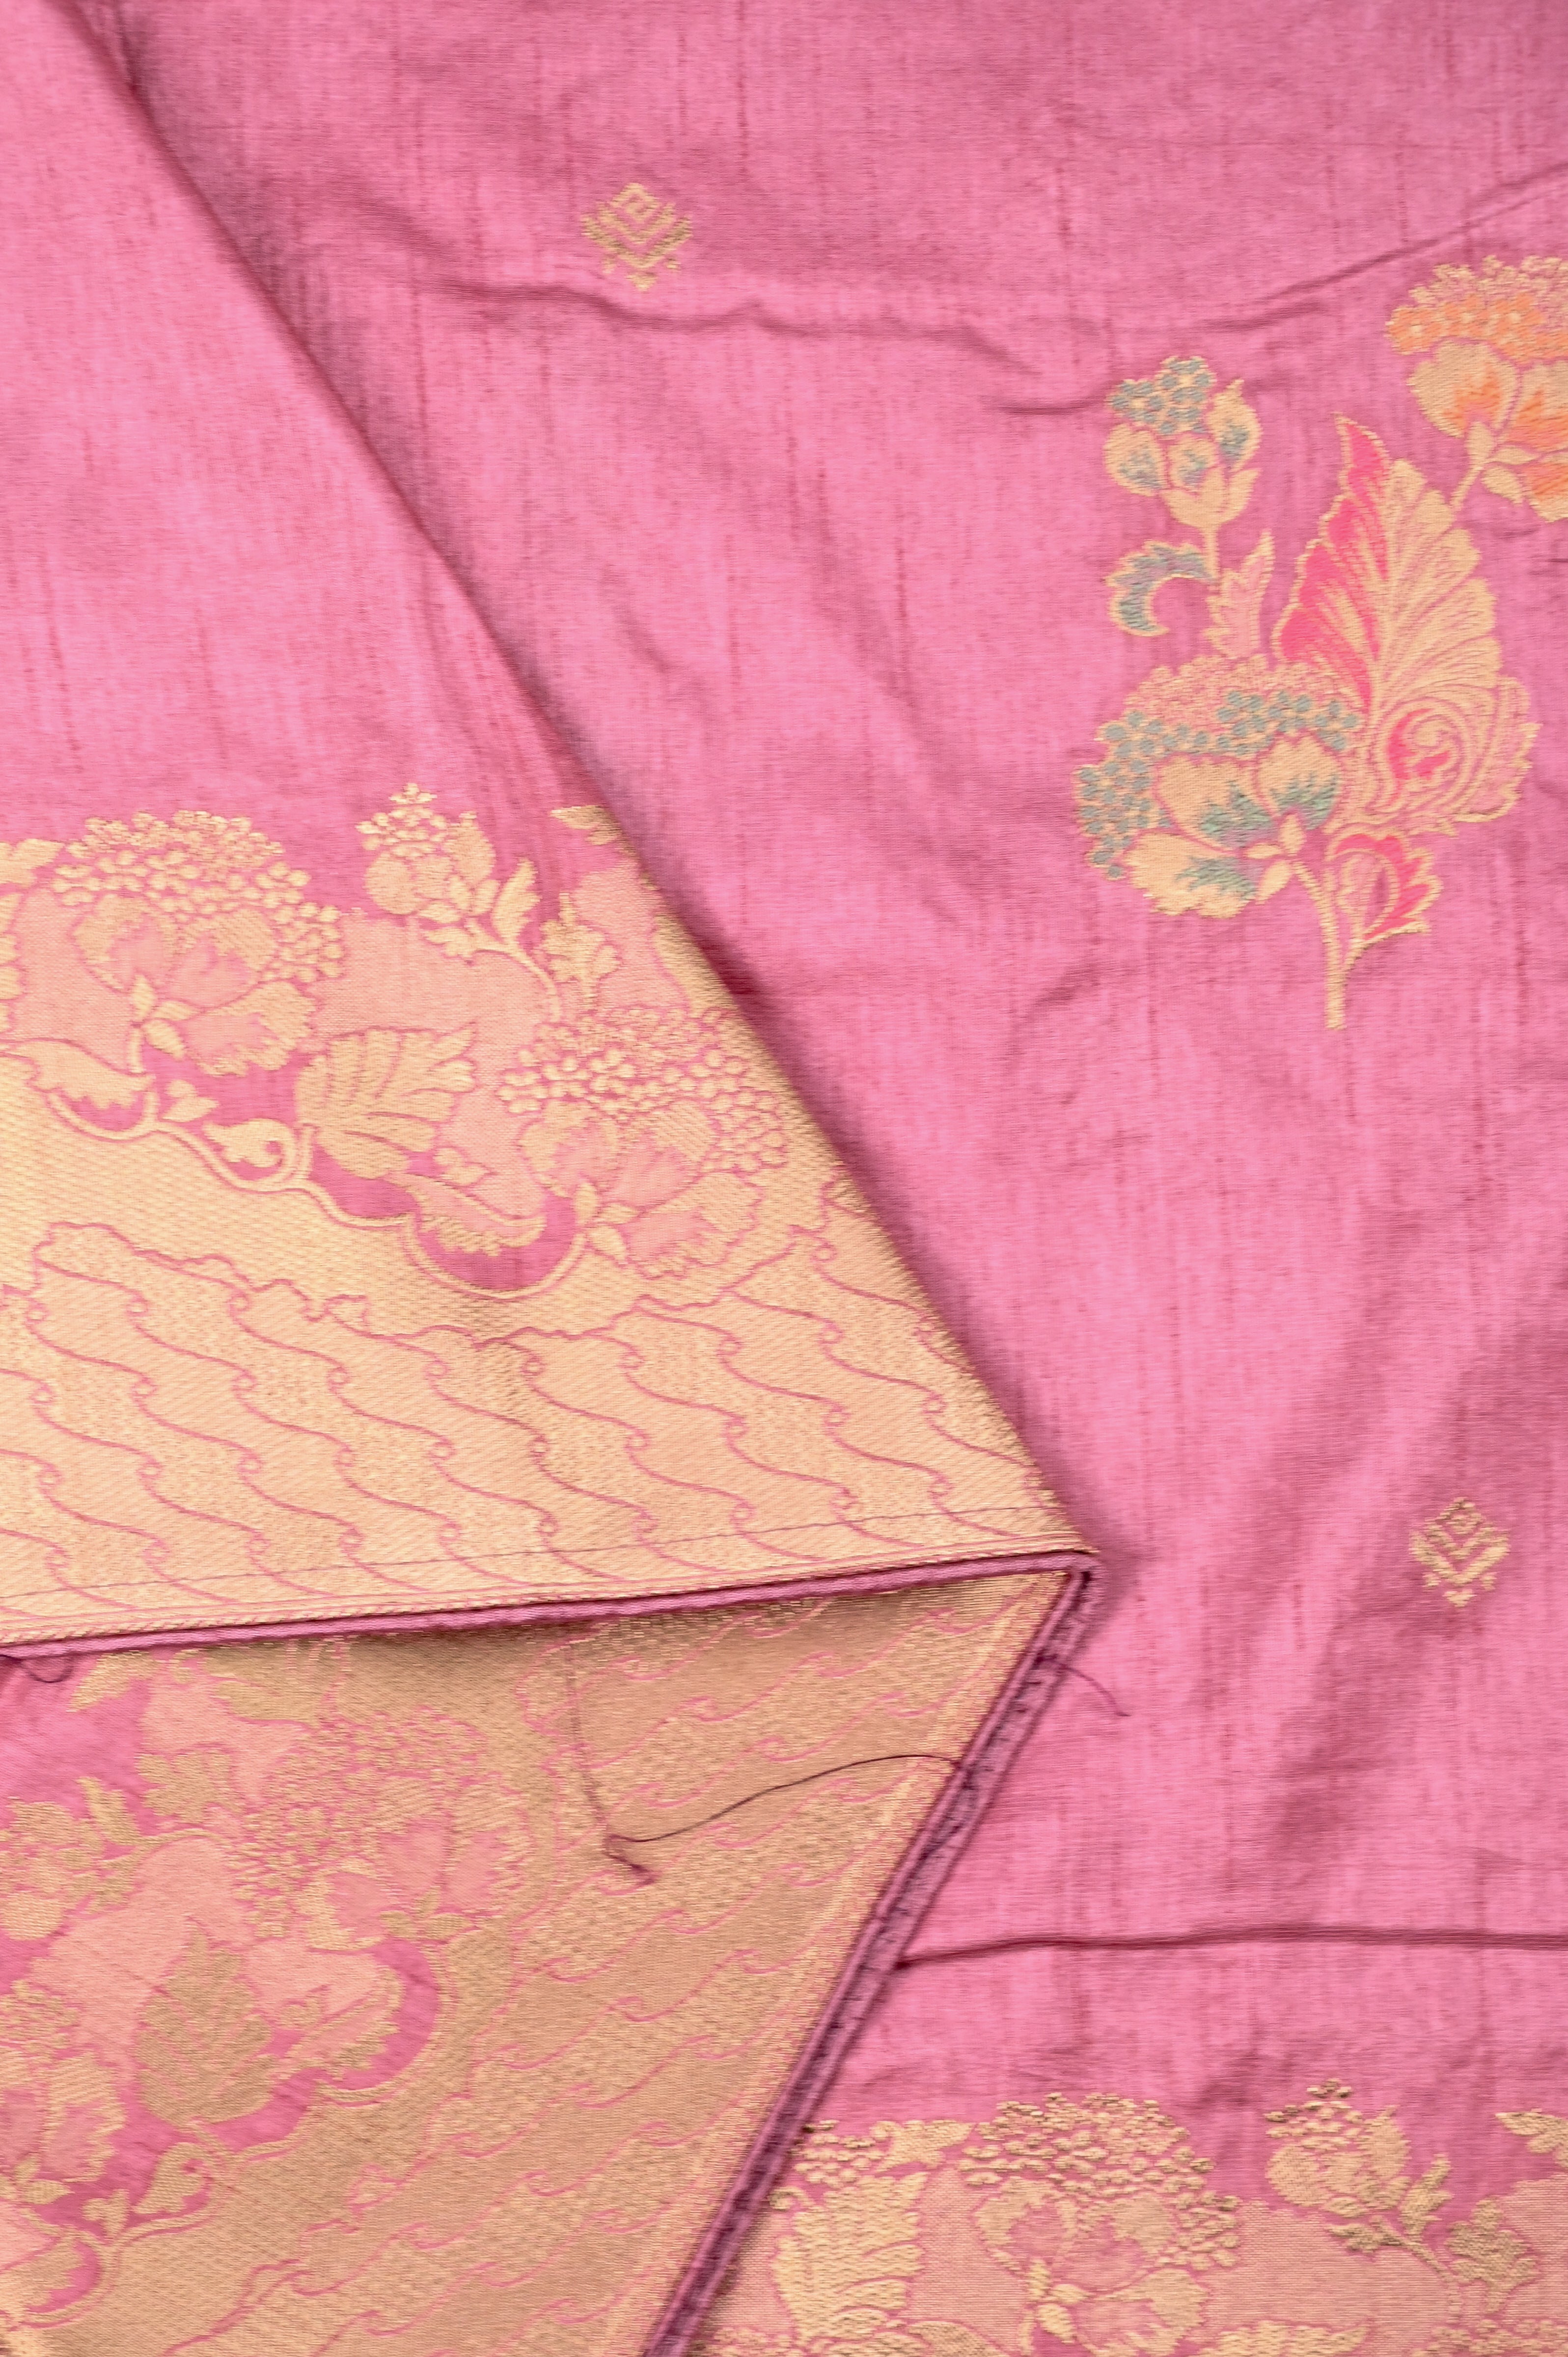 Dola silk saree baby pink color with allover meenakari motives, rich pallu, small zari border and running plain blouse.